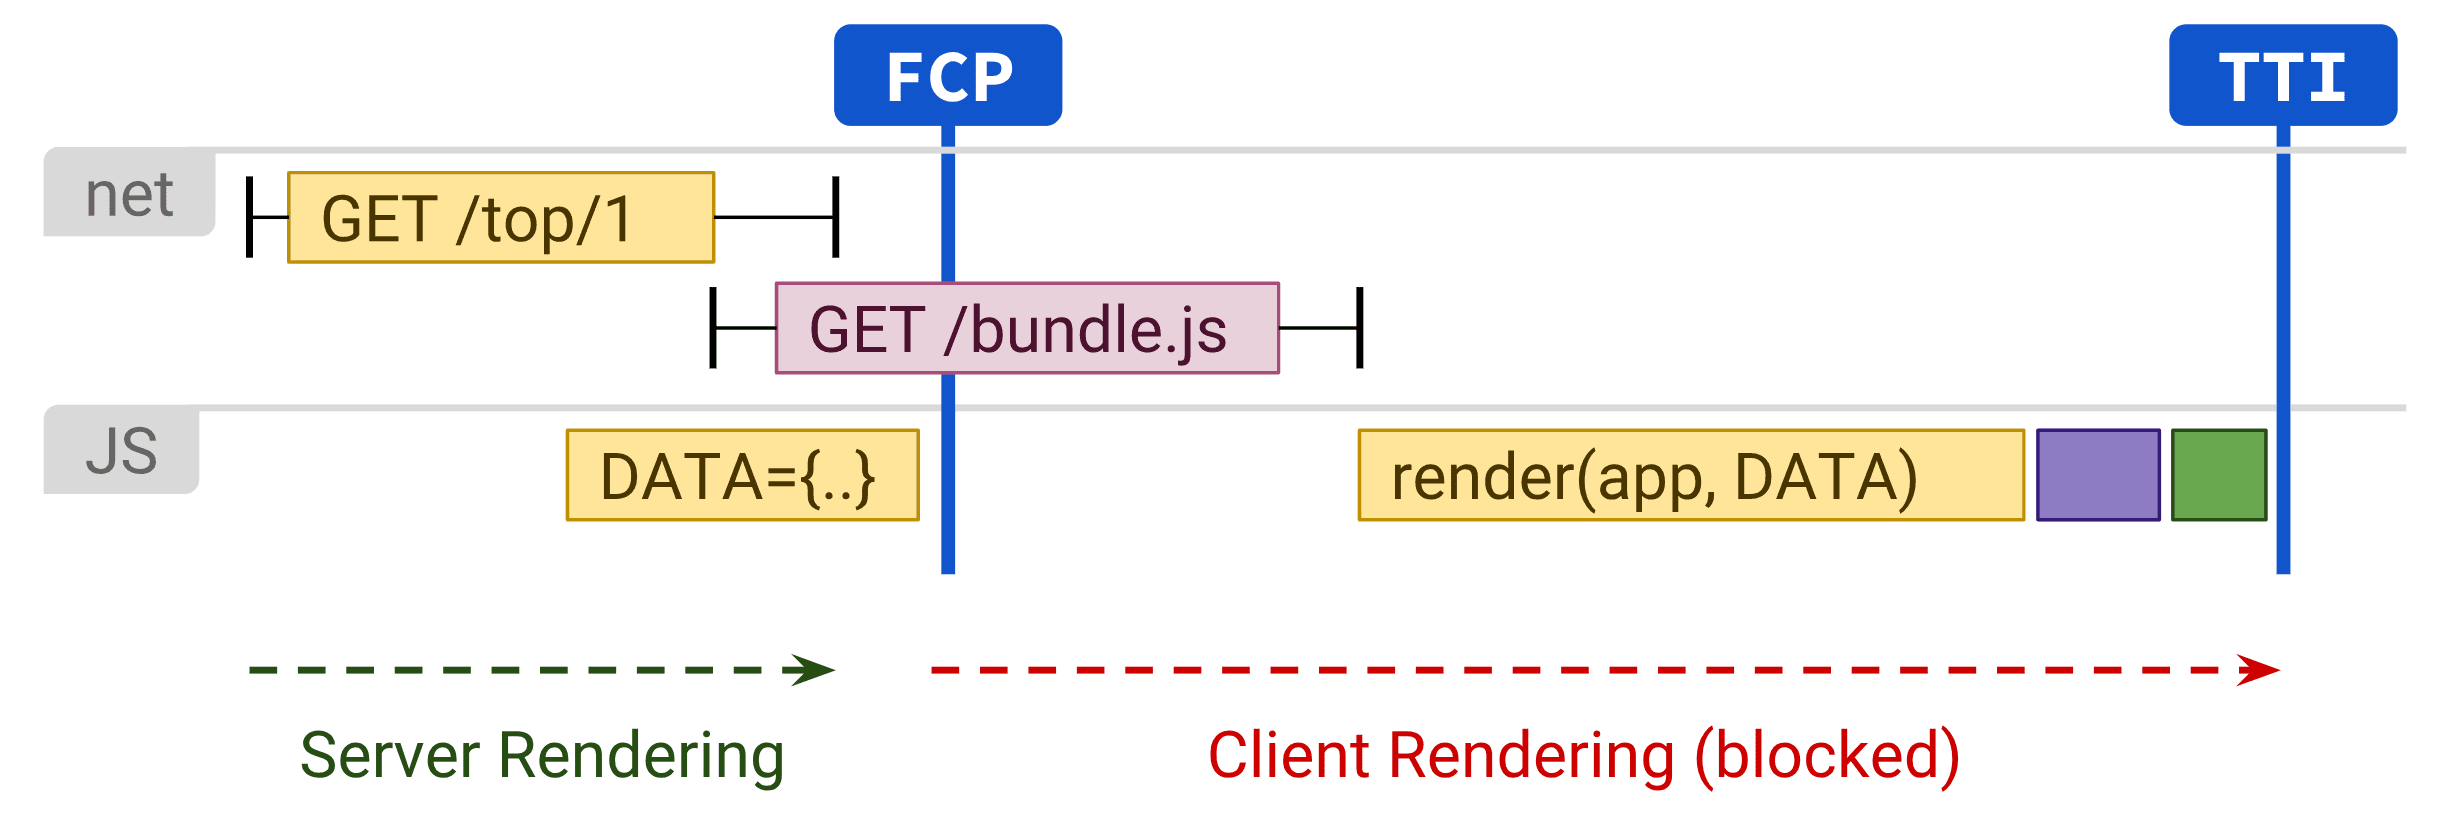 Diagrama mostrando a renderização do cliente afetando negativamente o TTI.